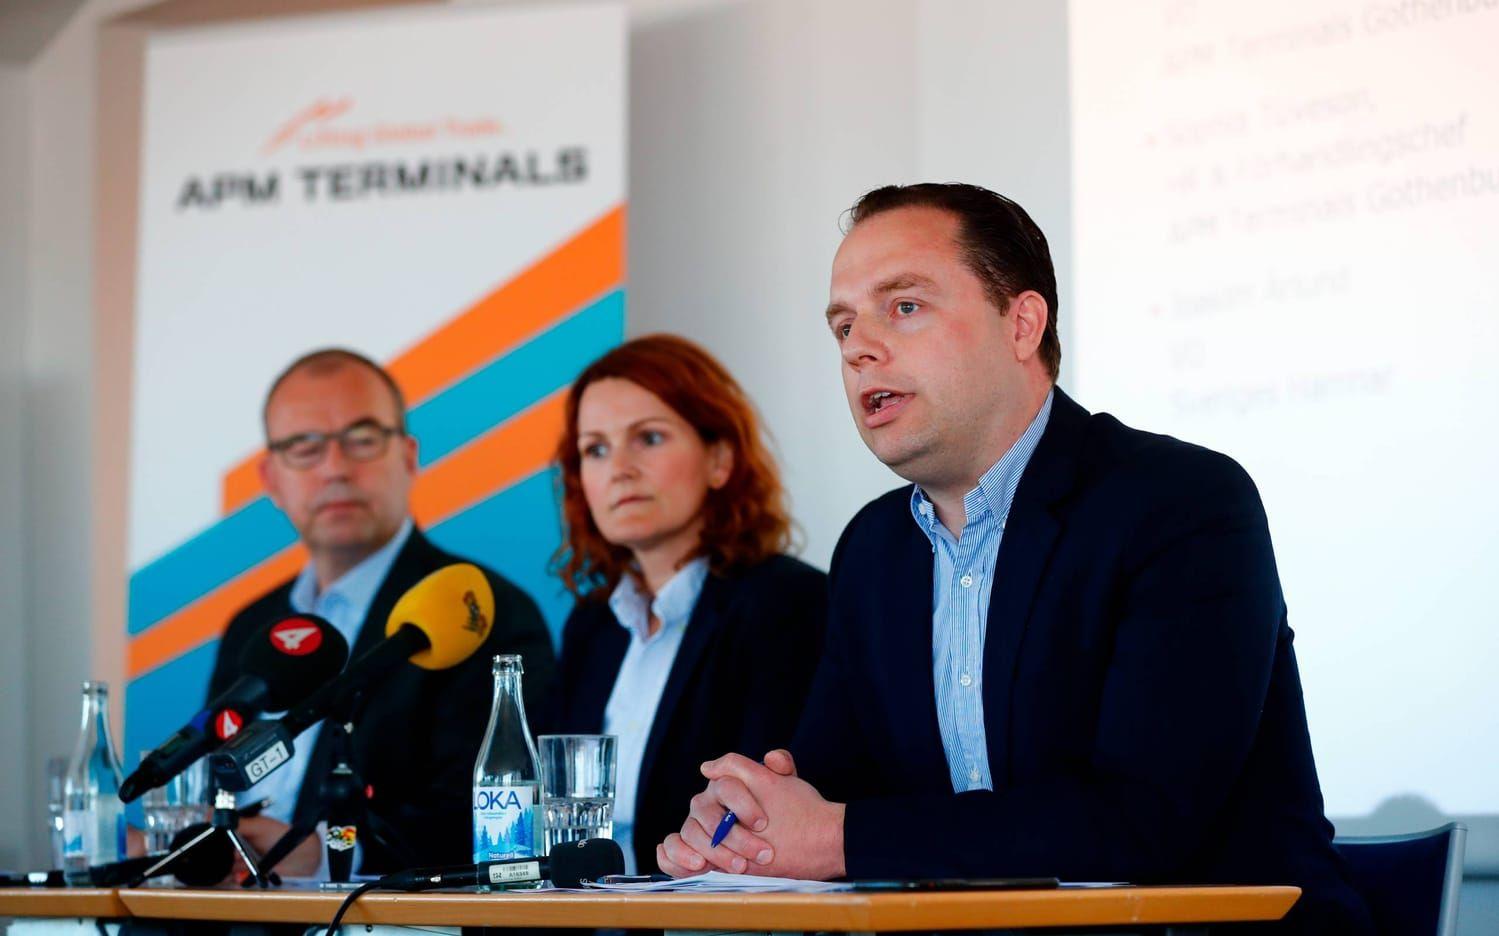 Med anledning av varslet höll APM Terminals presskonferens under tisdagen. Bild: Thomas Johansson
